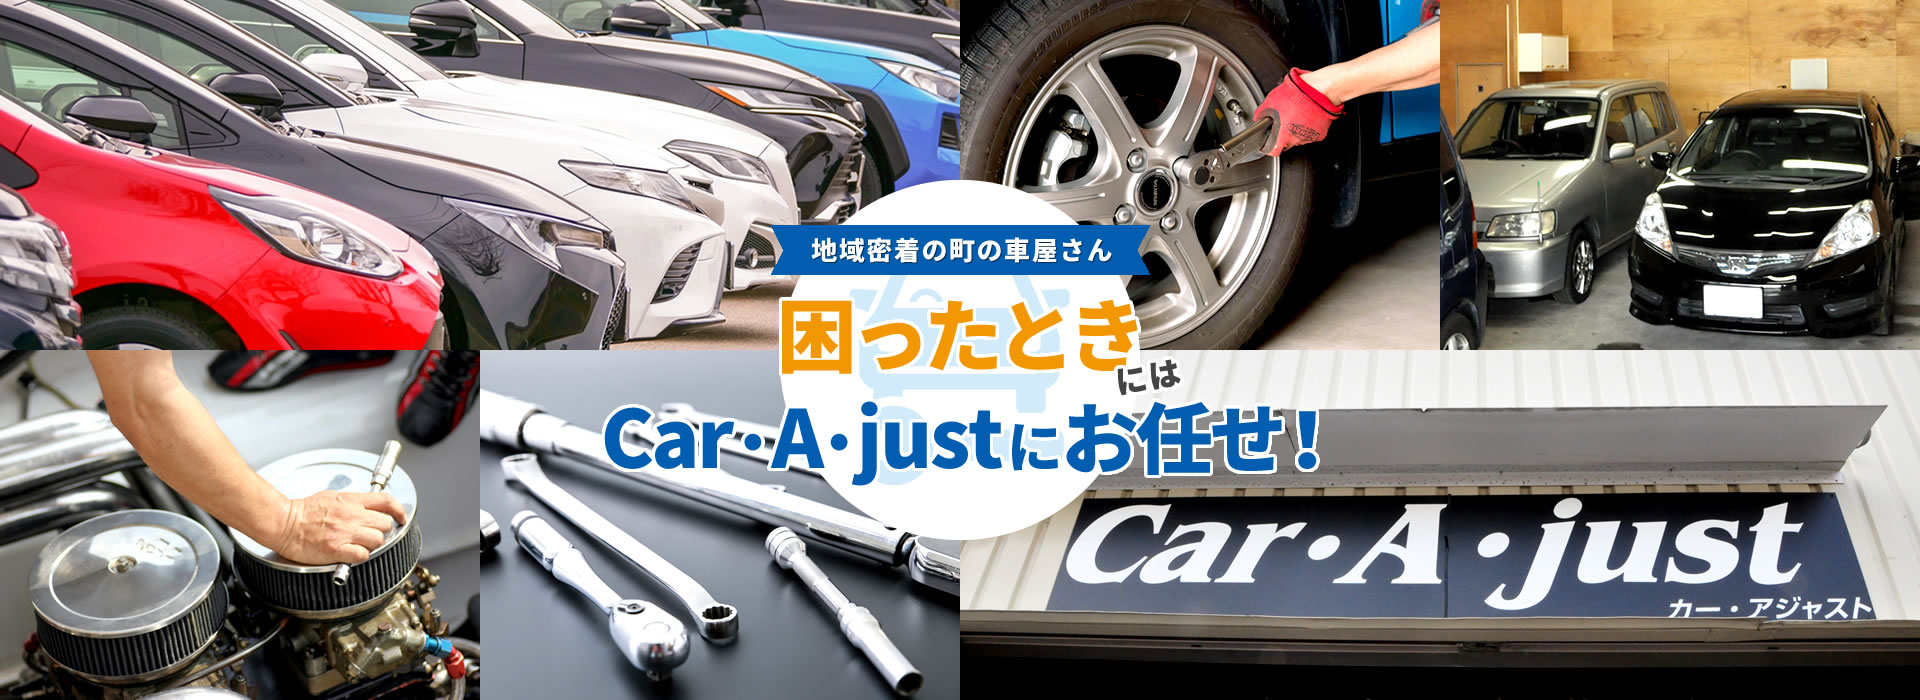 合同会社Car・A・just | 埼玉県 戸田市 中古車販売 自動車整備 自動車修理